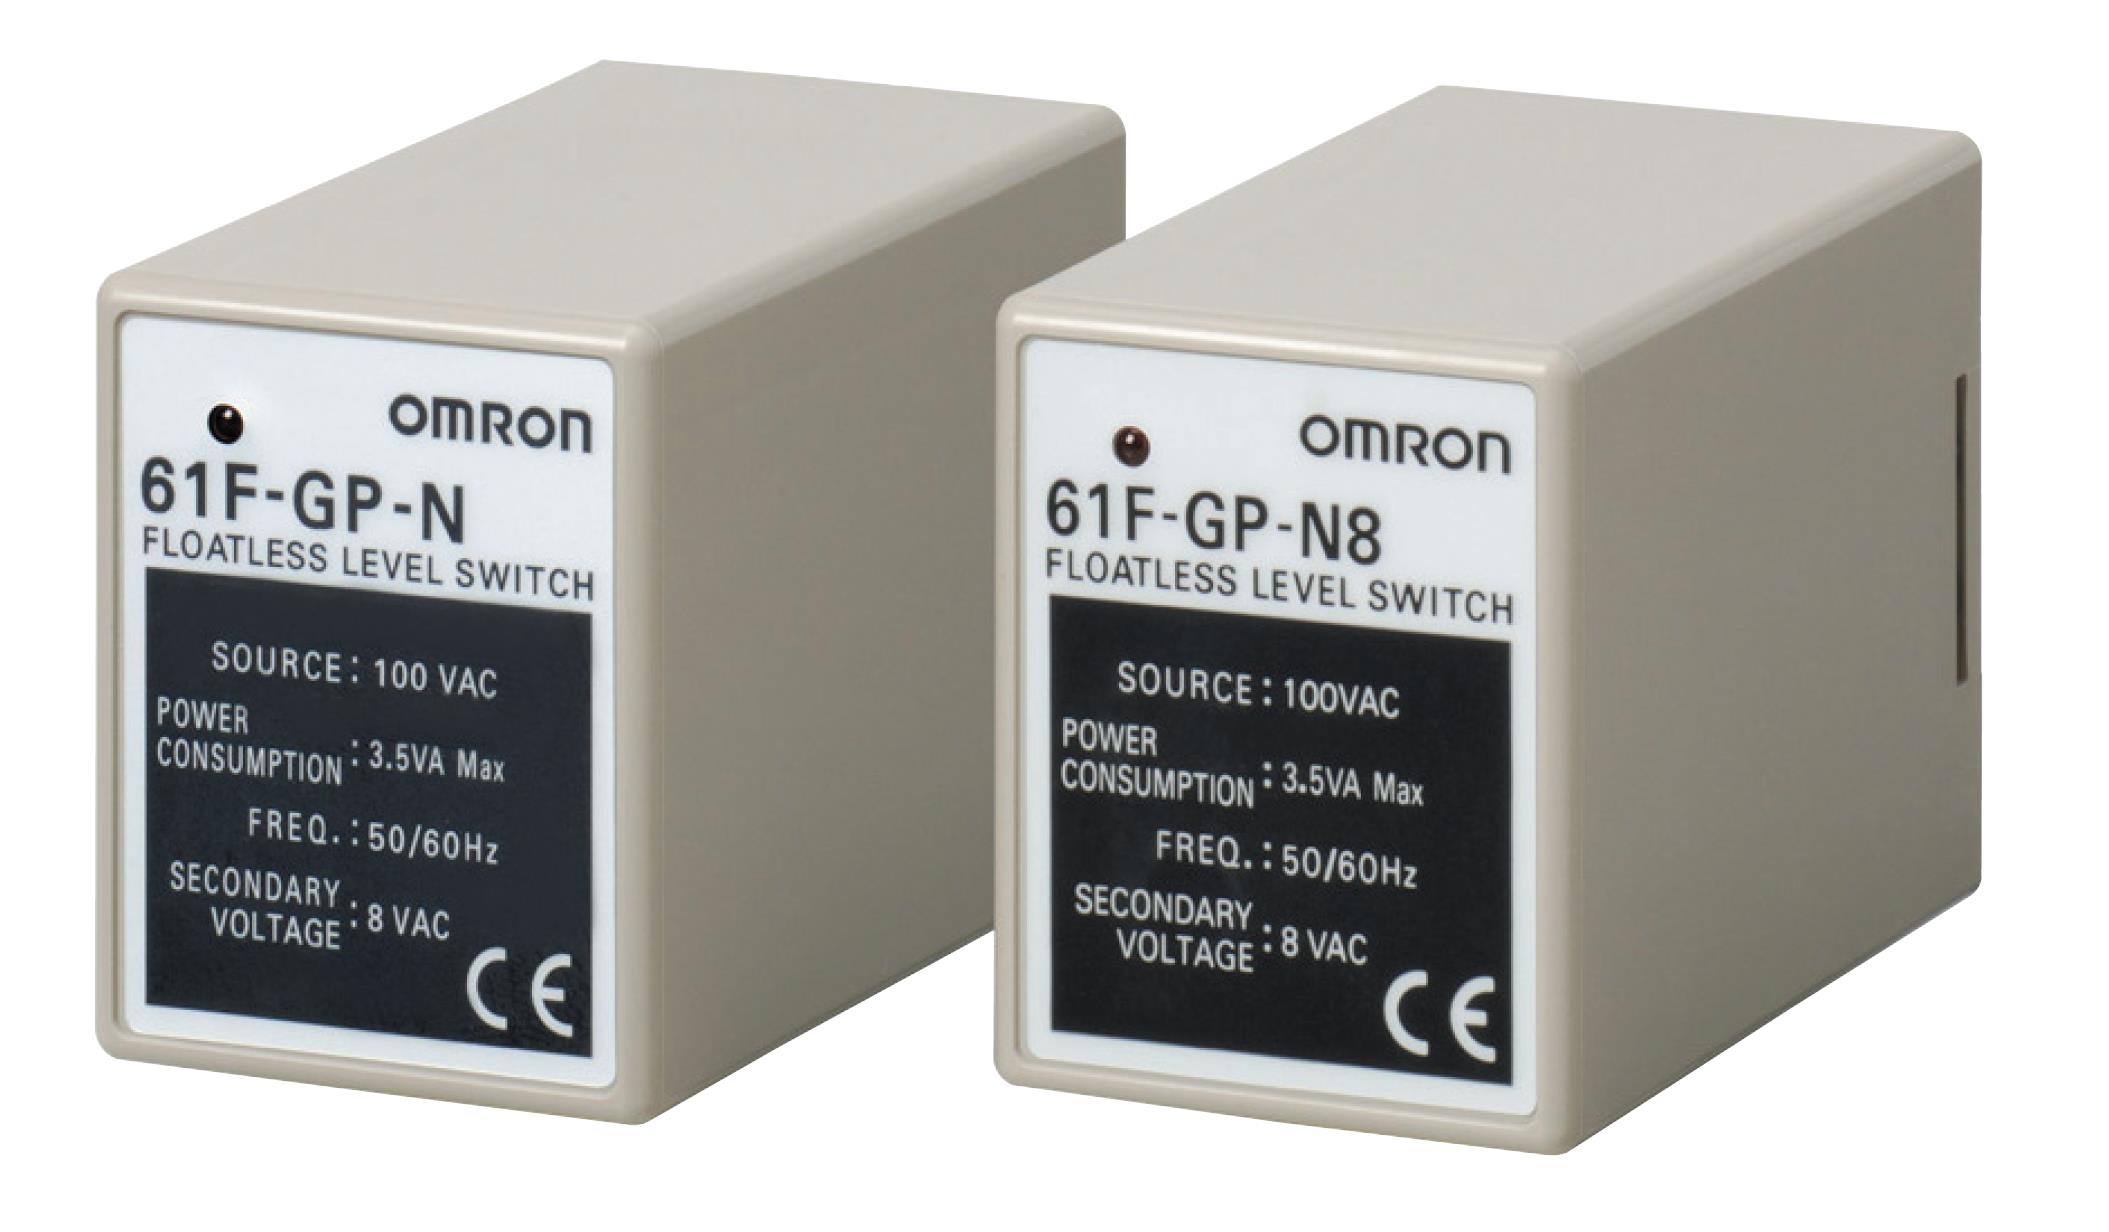 待机耗电降低到本公司以往产品的85%以下（61F-GN）
欧姆龙61F-GP-NH AC240